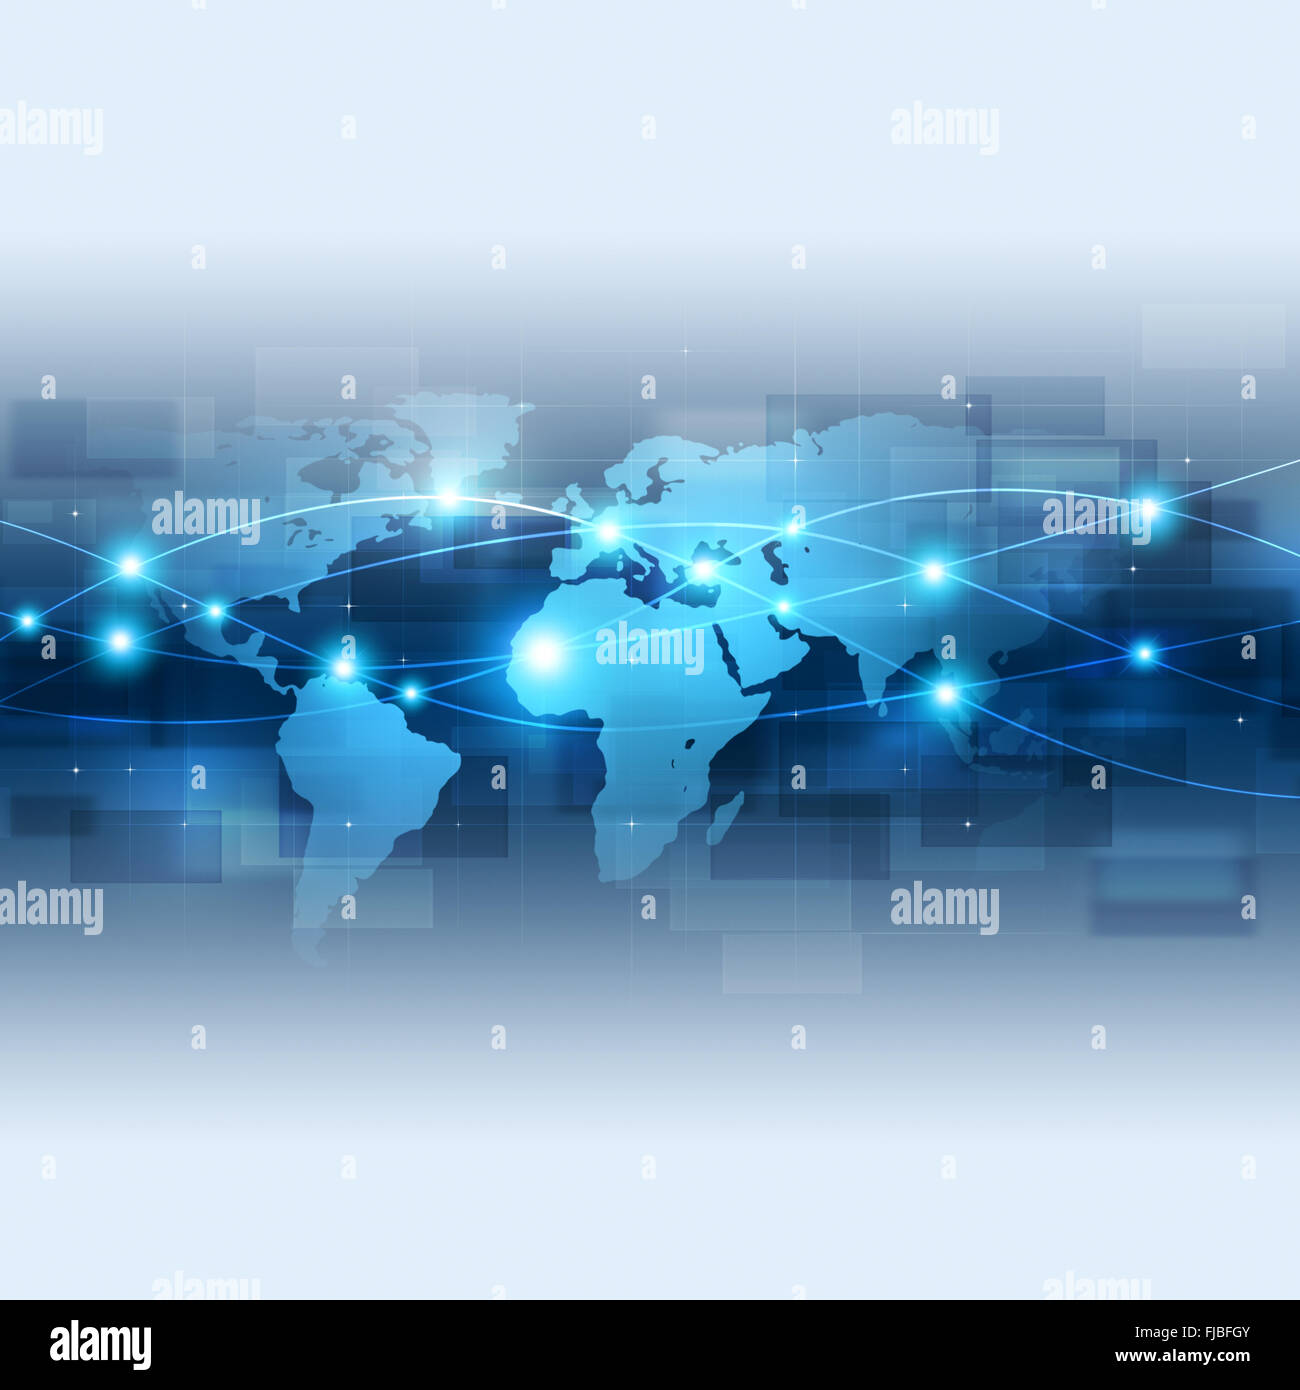 La technologie de connexion réseau mondial abstrait fond bleu Banque D'Images